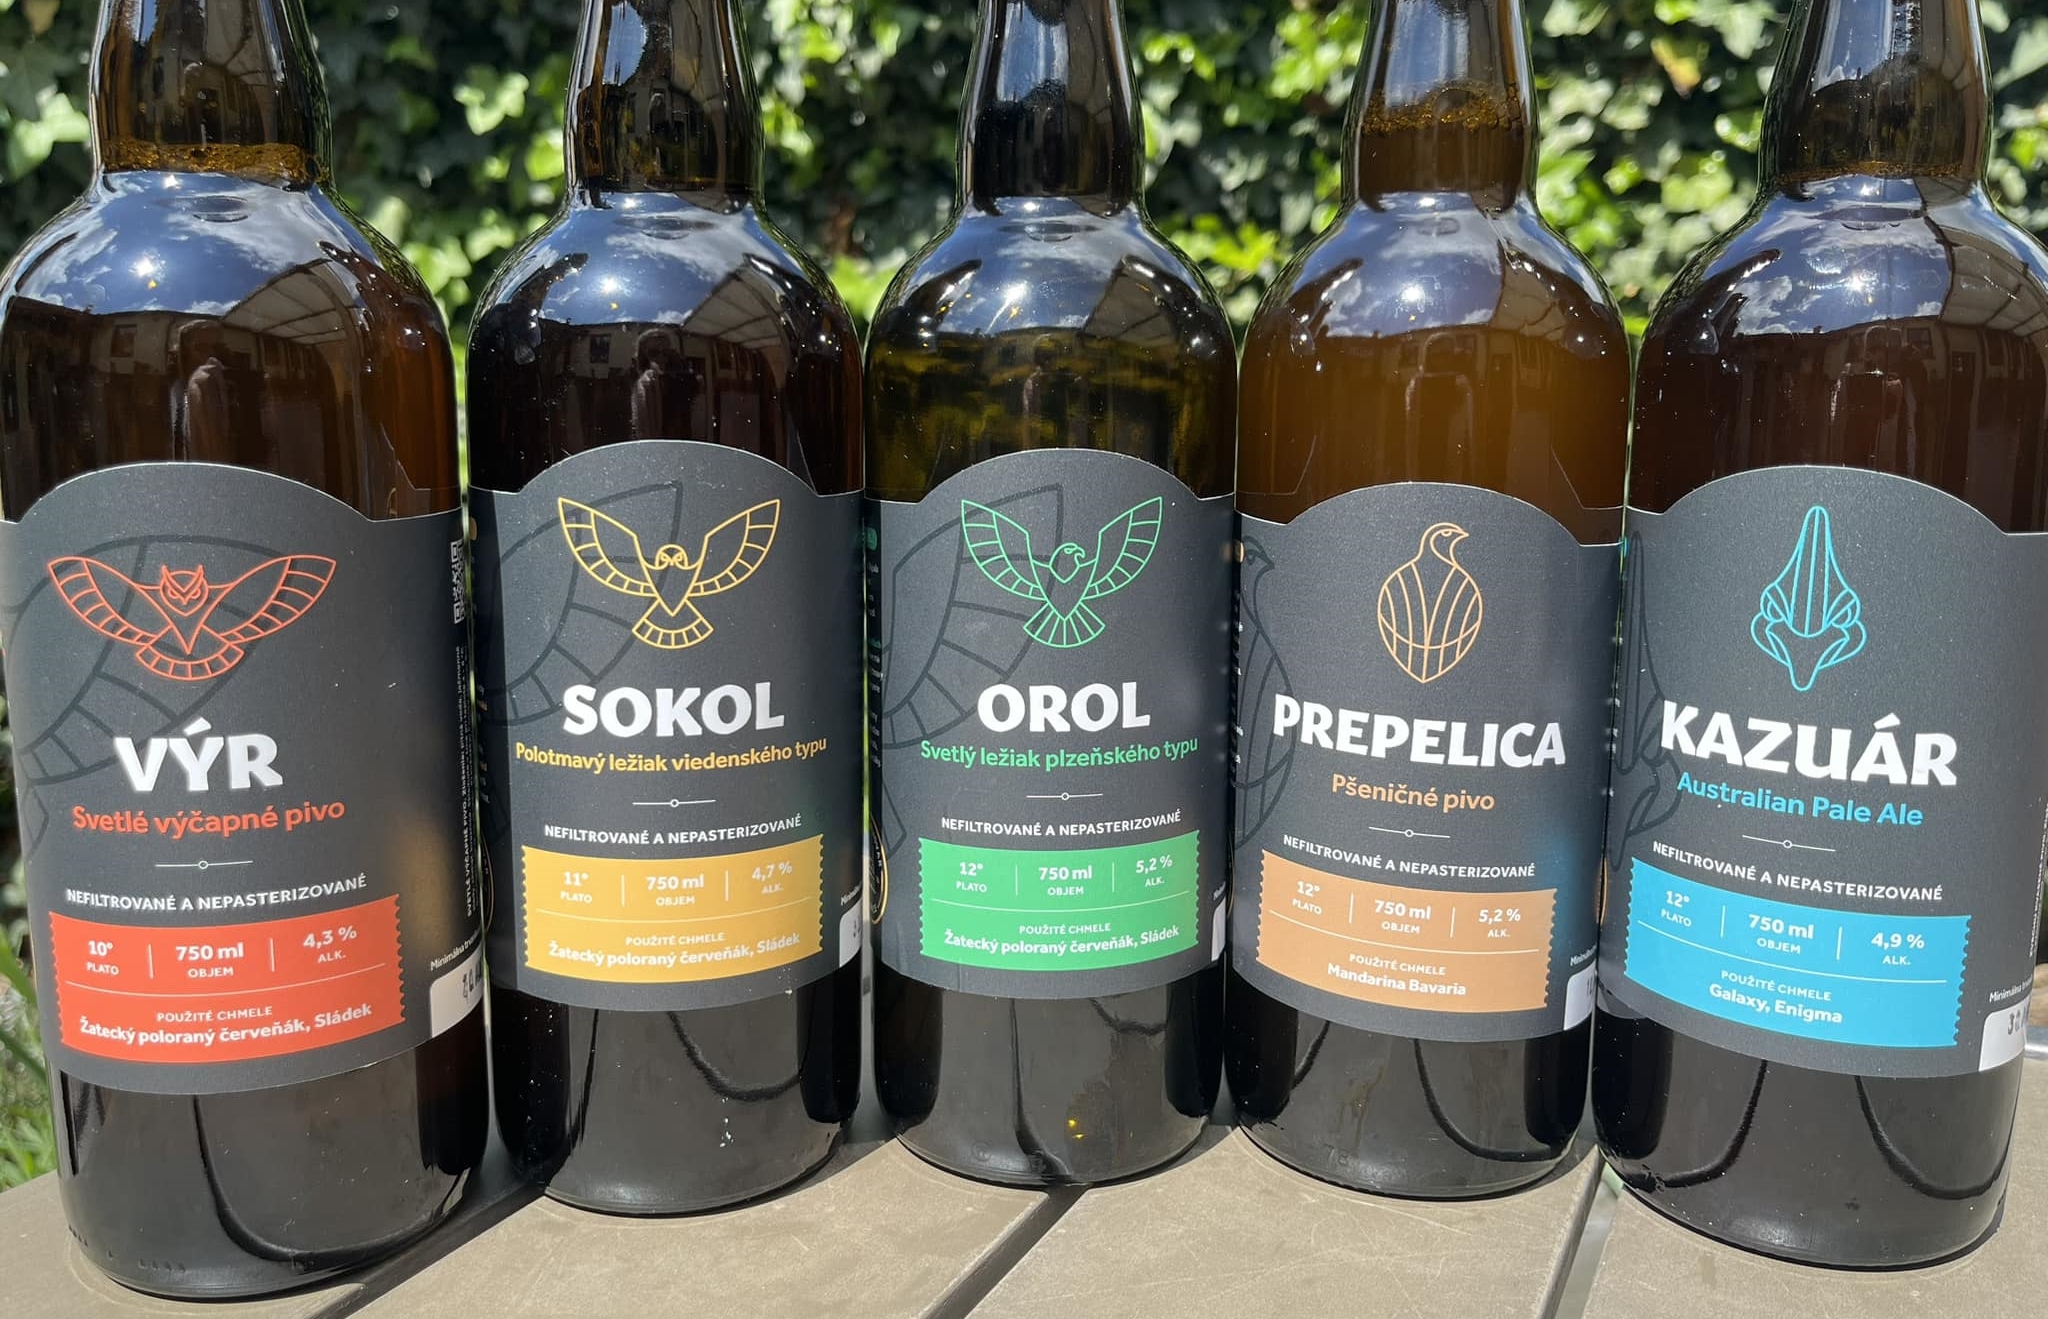 Panský pivovar Bojnice: Menili sme logo, názvy pív aj etikety